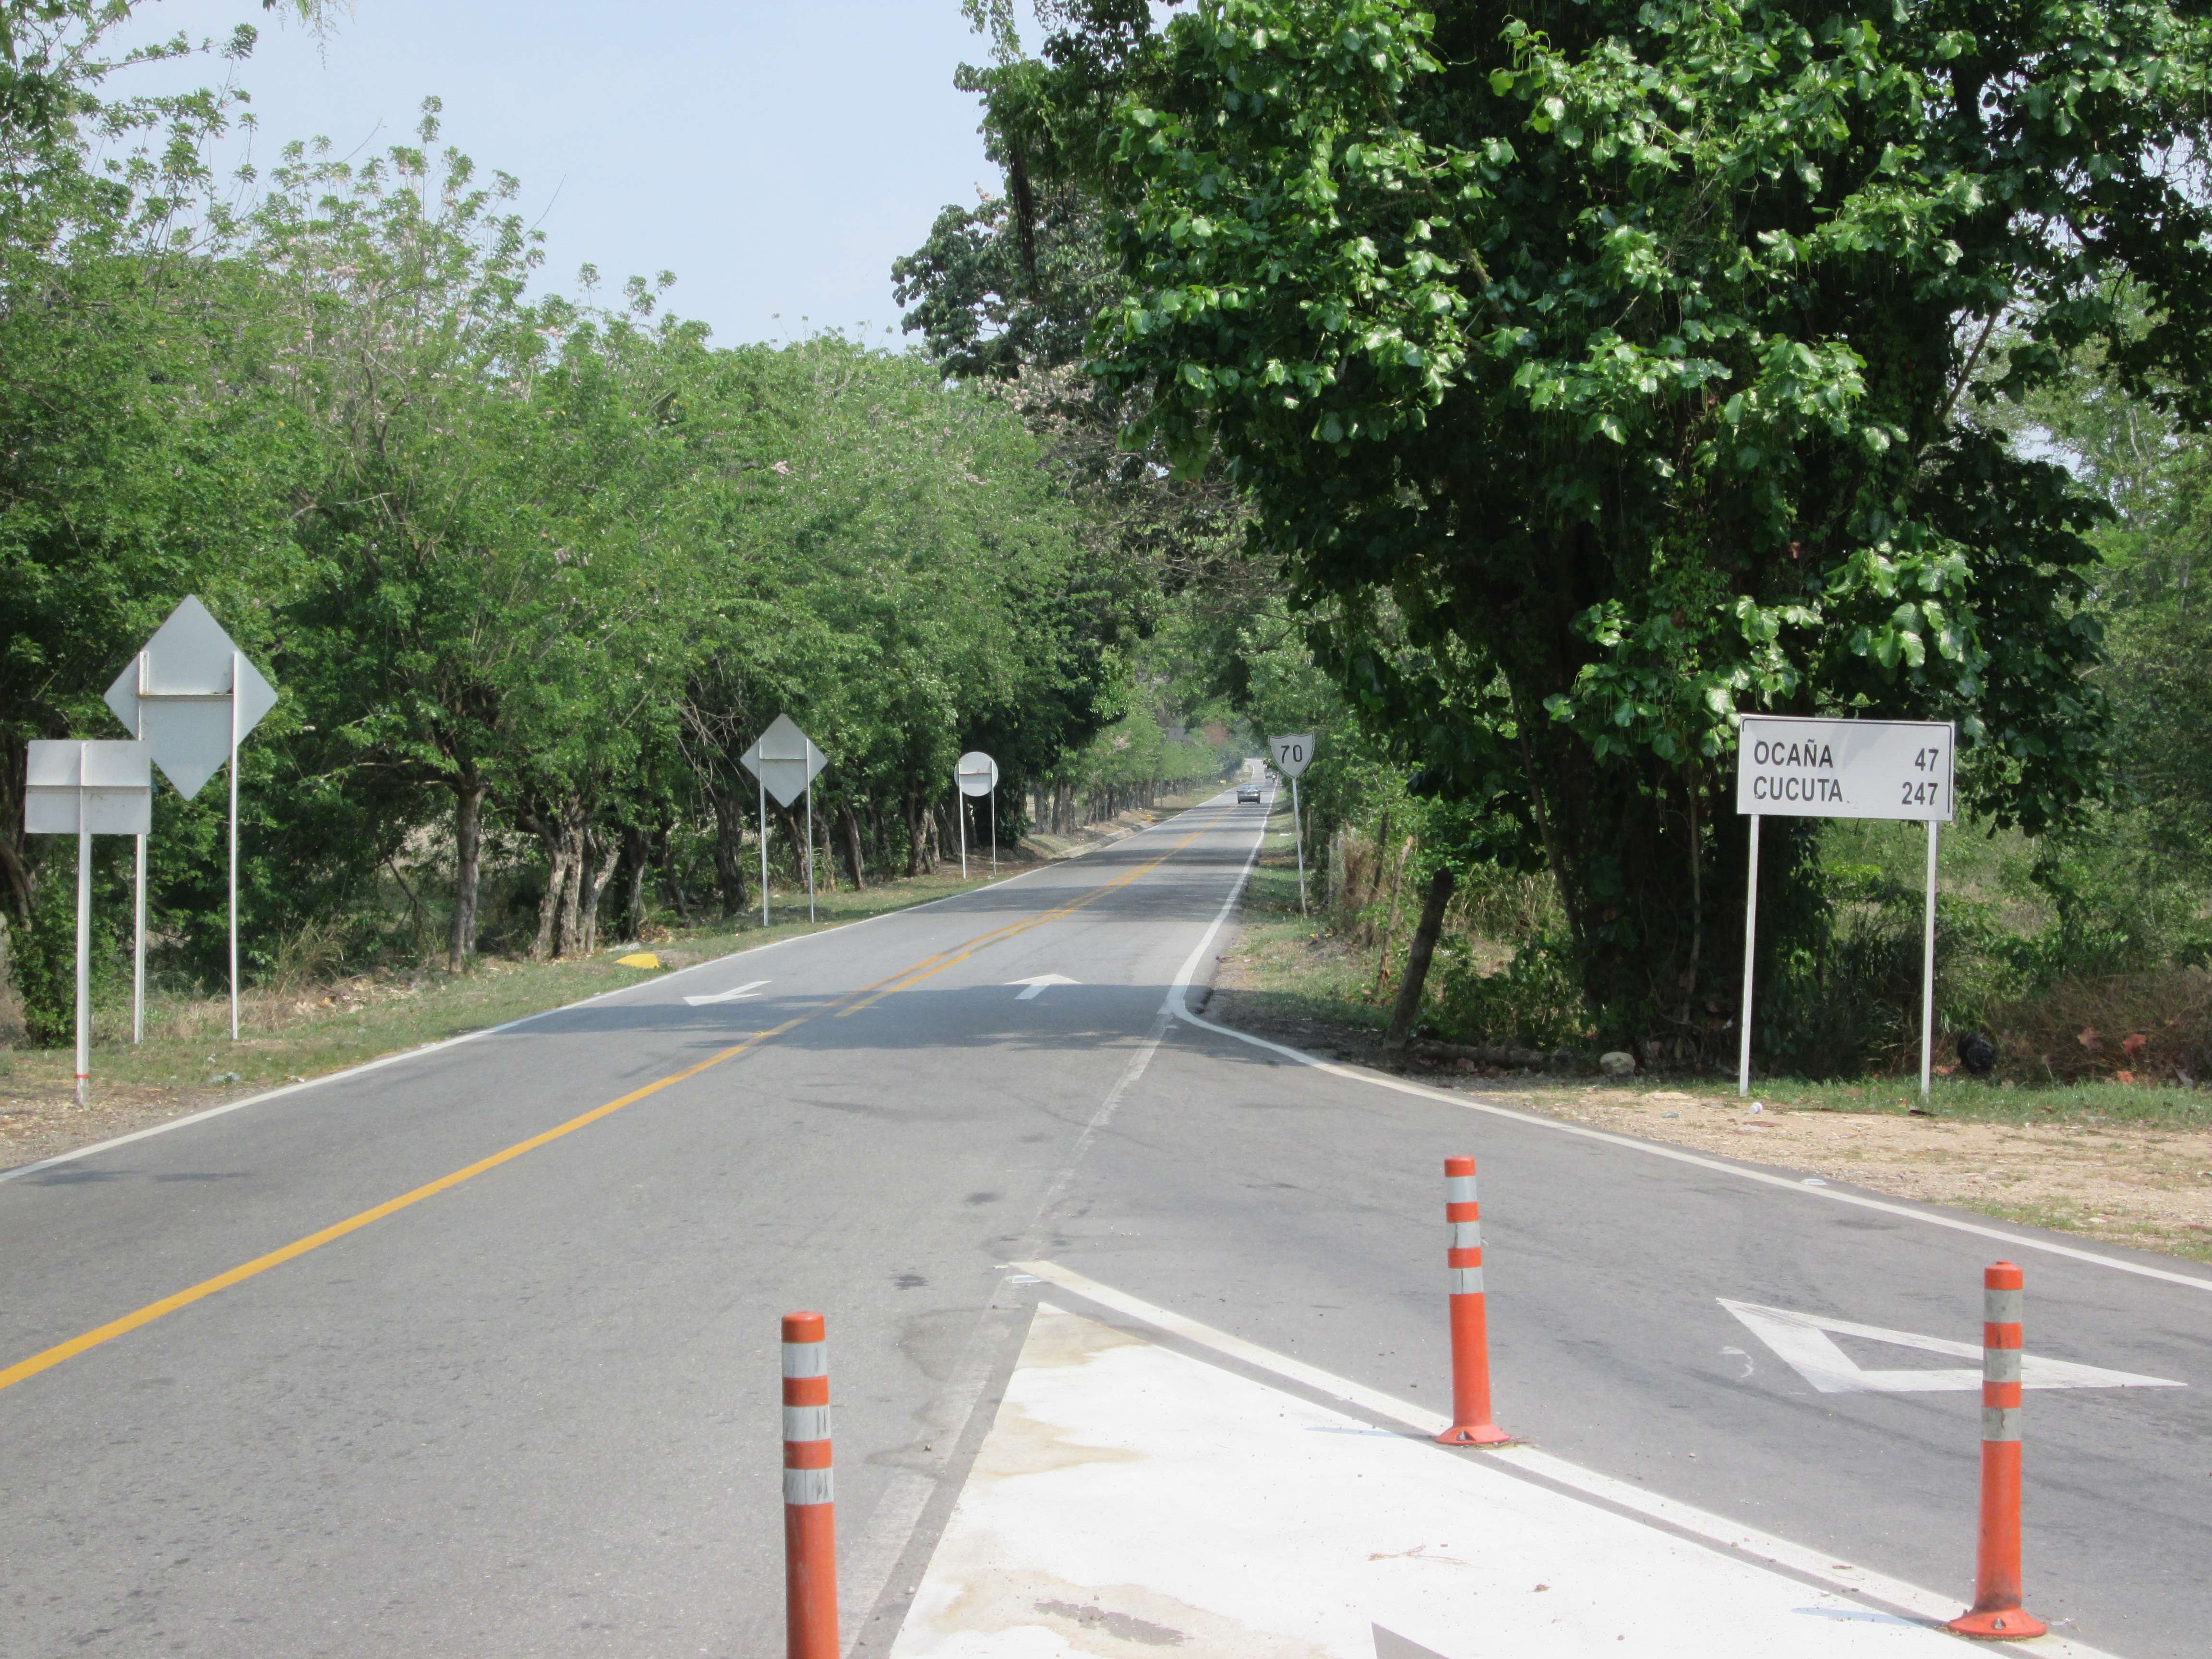 Crossroads showing a long way to go: OCAÑA 47, CUCUTA 247